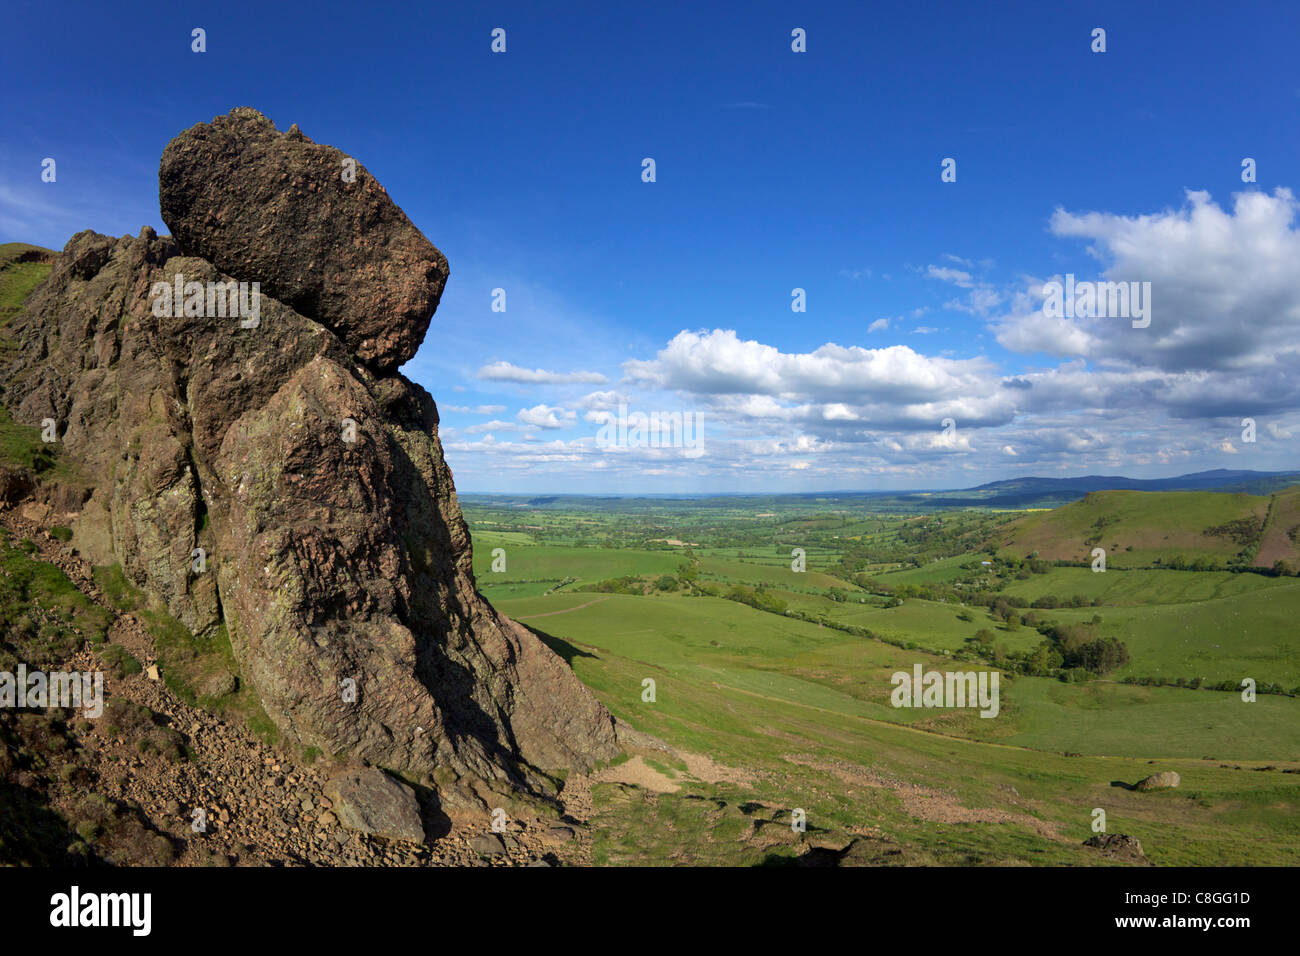 Caer Caradoc rocce e paesaggio inglese vicino a Cardington, Church Stretton Hills, Shropshire, England, Regno Unito Foto Stock